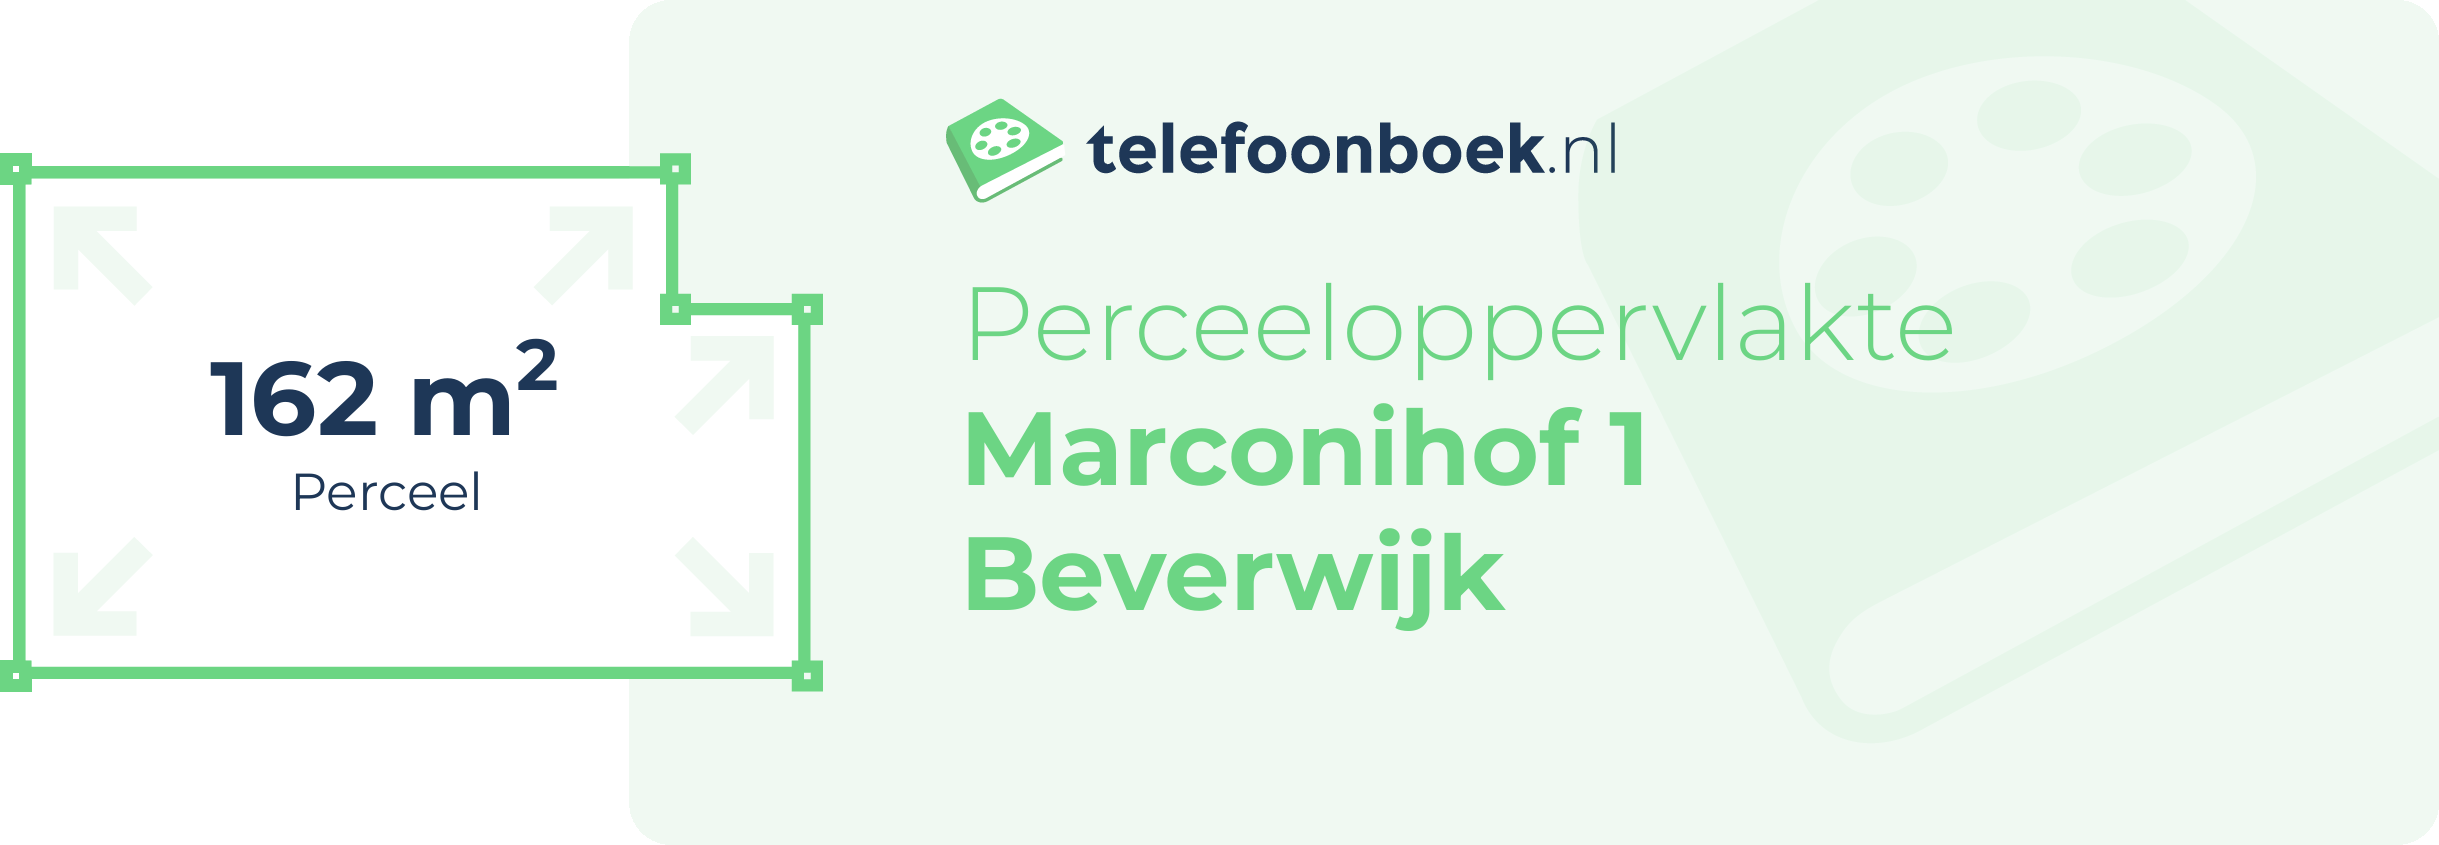 Perceeloppervlakte Marconihof 1 Beverwijk